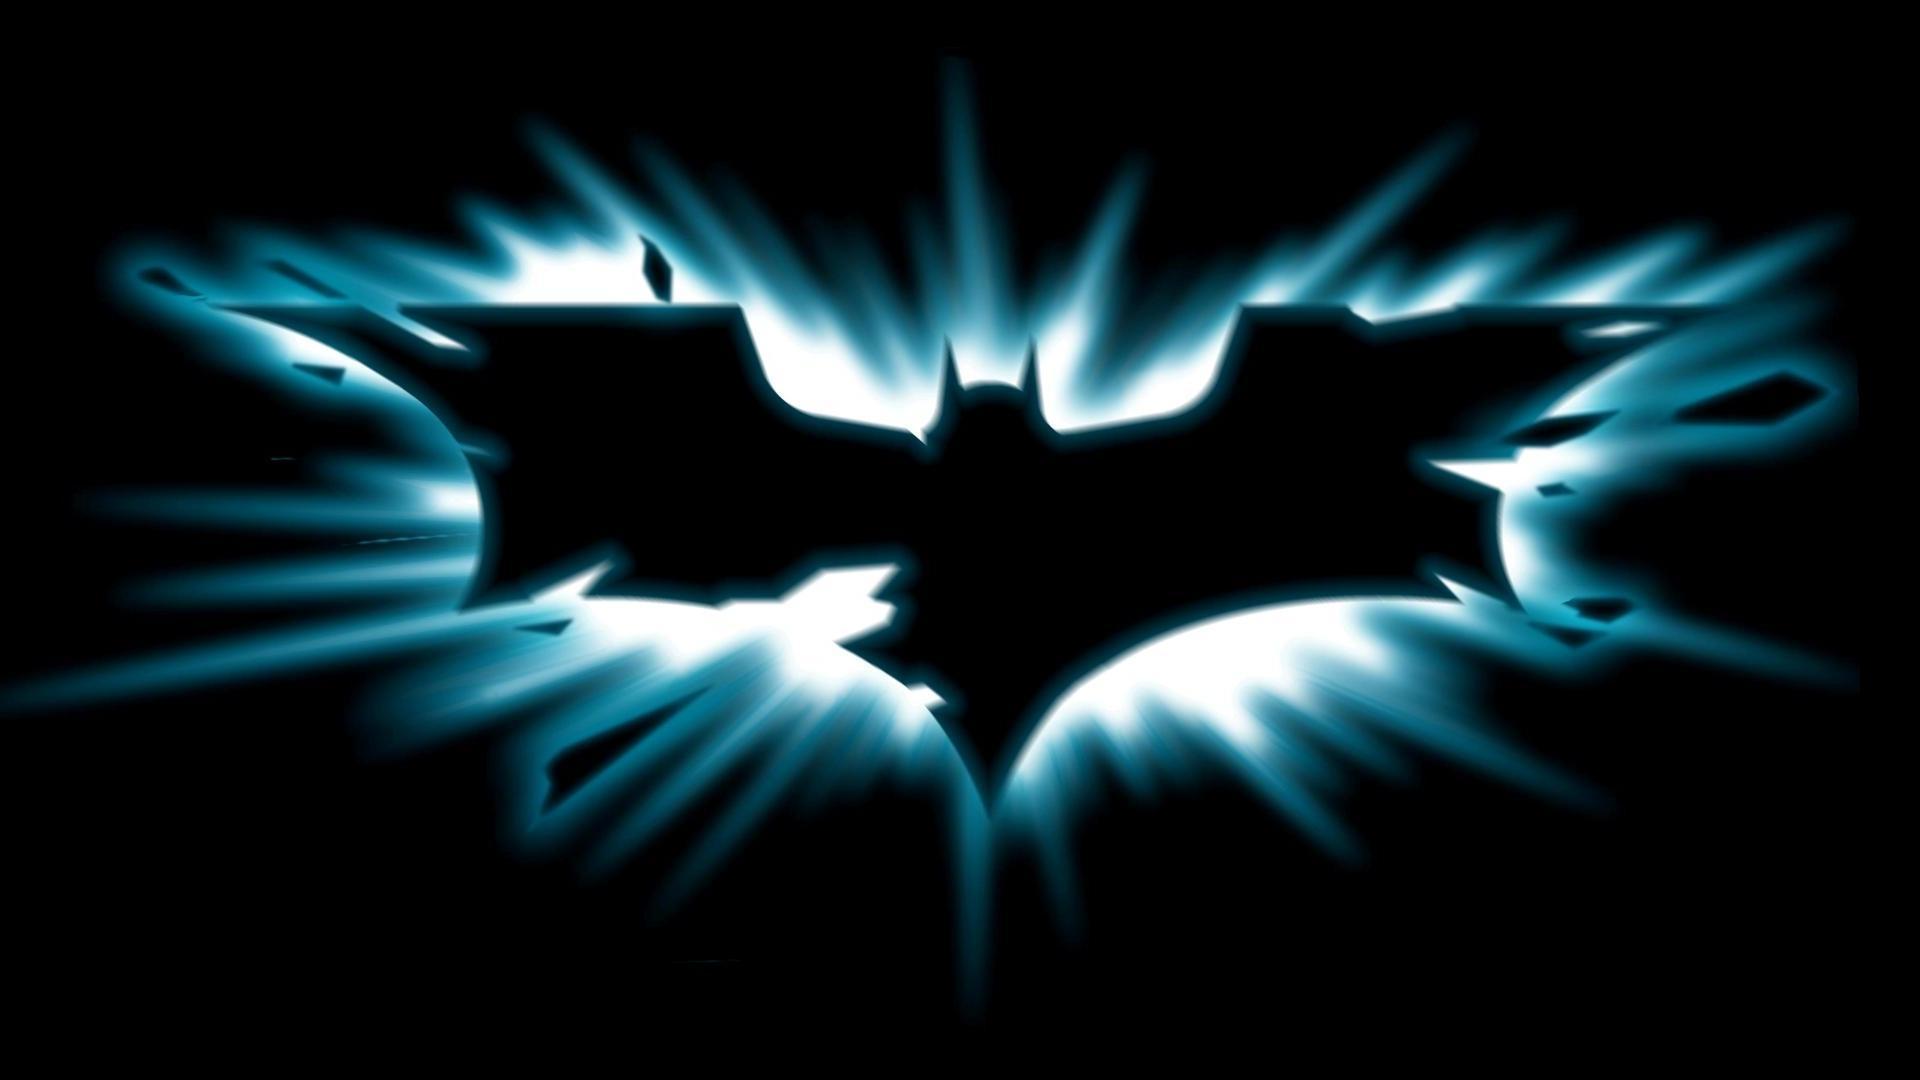 Dark Knight logo